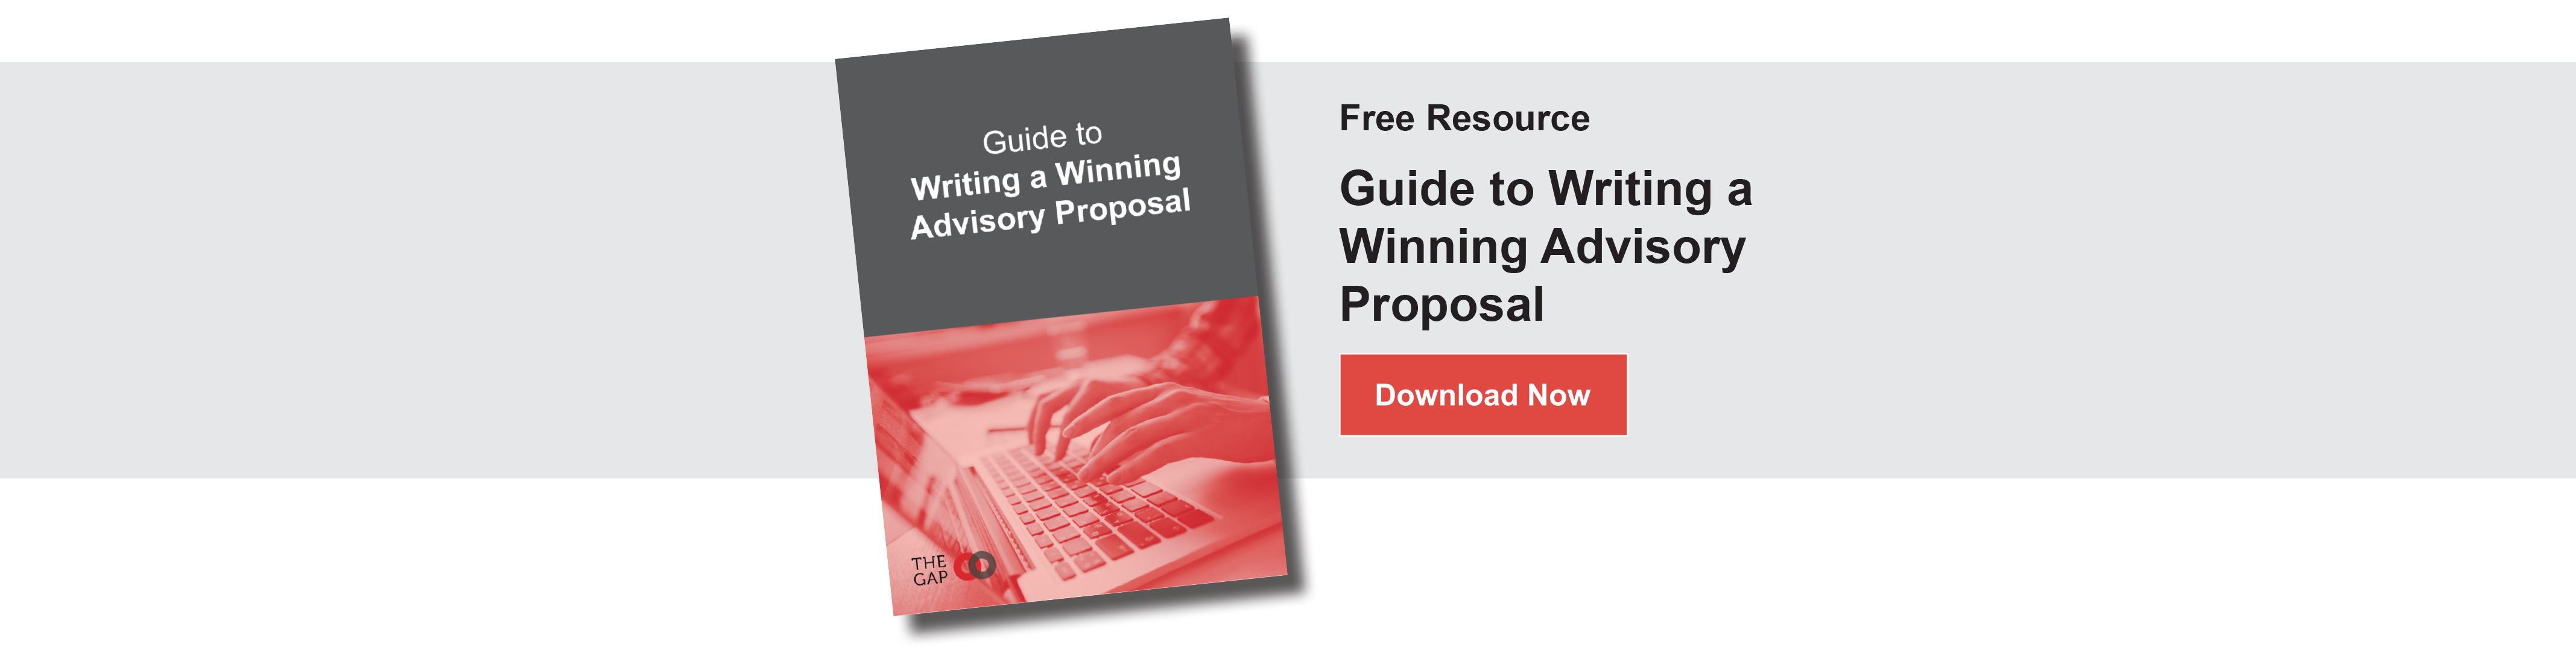 Guide to Writing a Winning Advisory Proposal